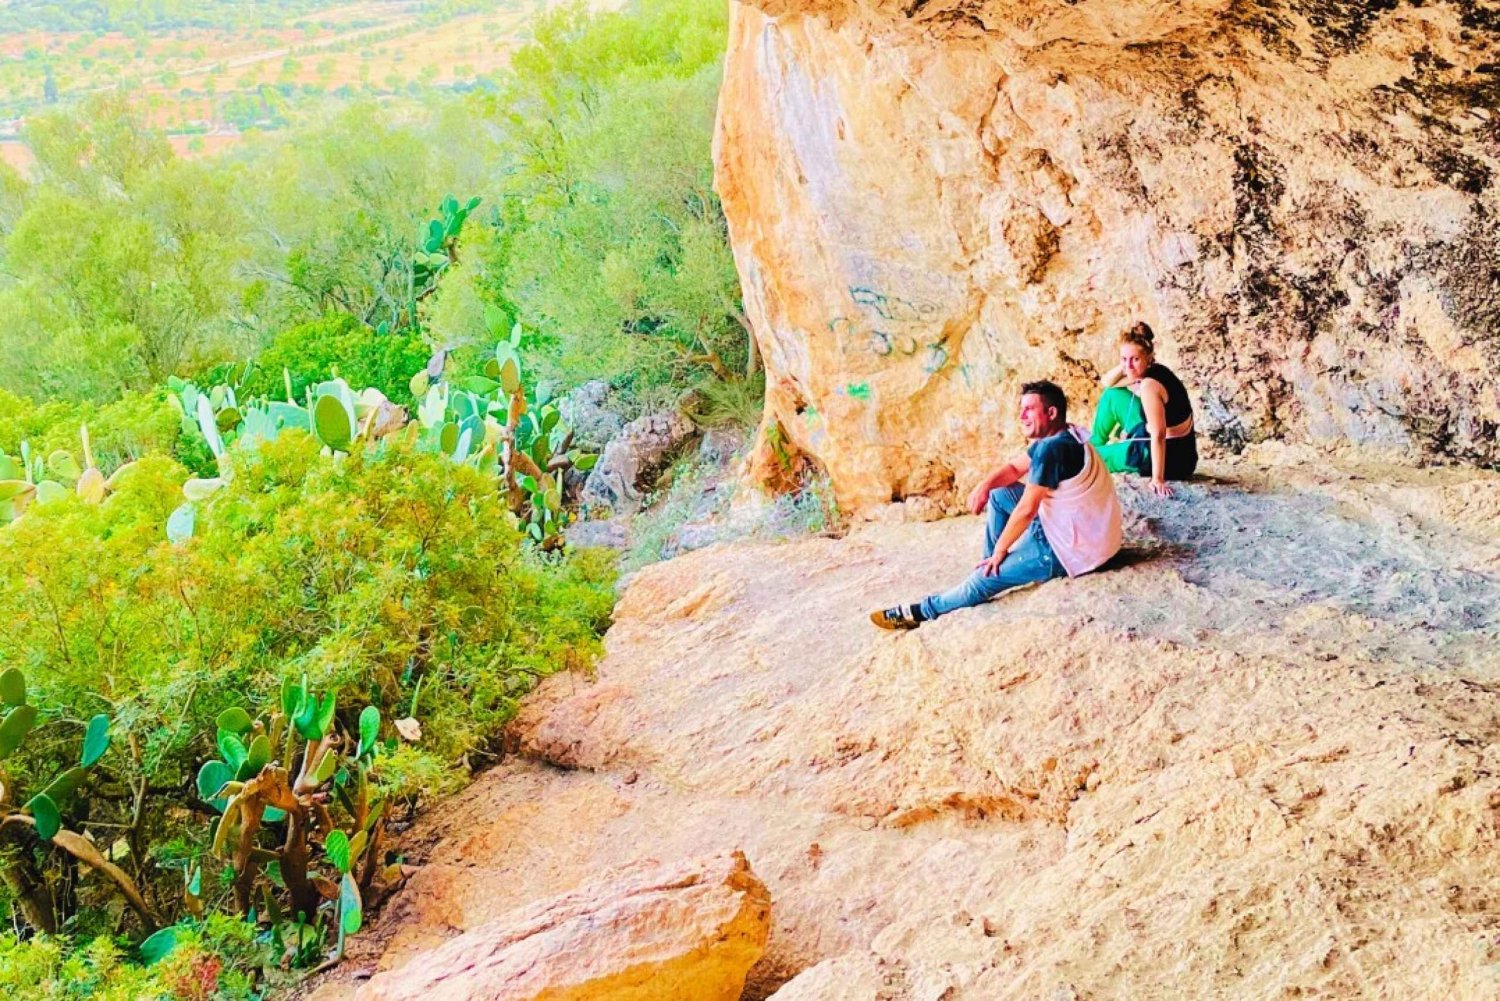 Cala Millor: 'Cavemen', grotta su una montagna, gioco ed escursione divertenti